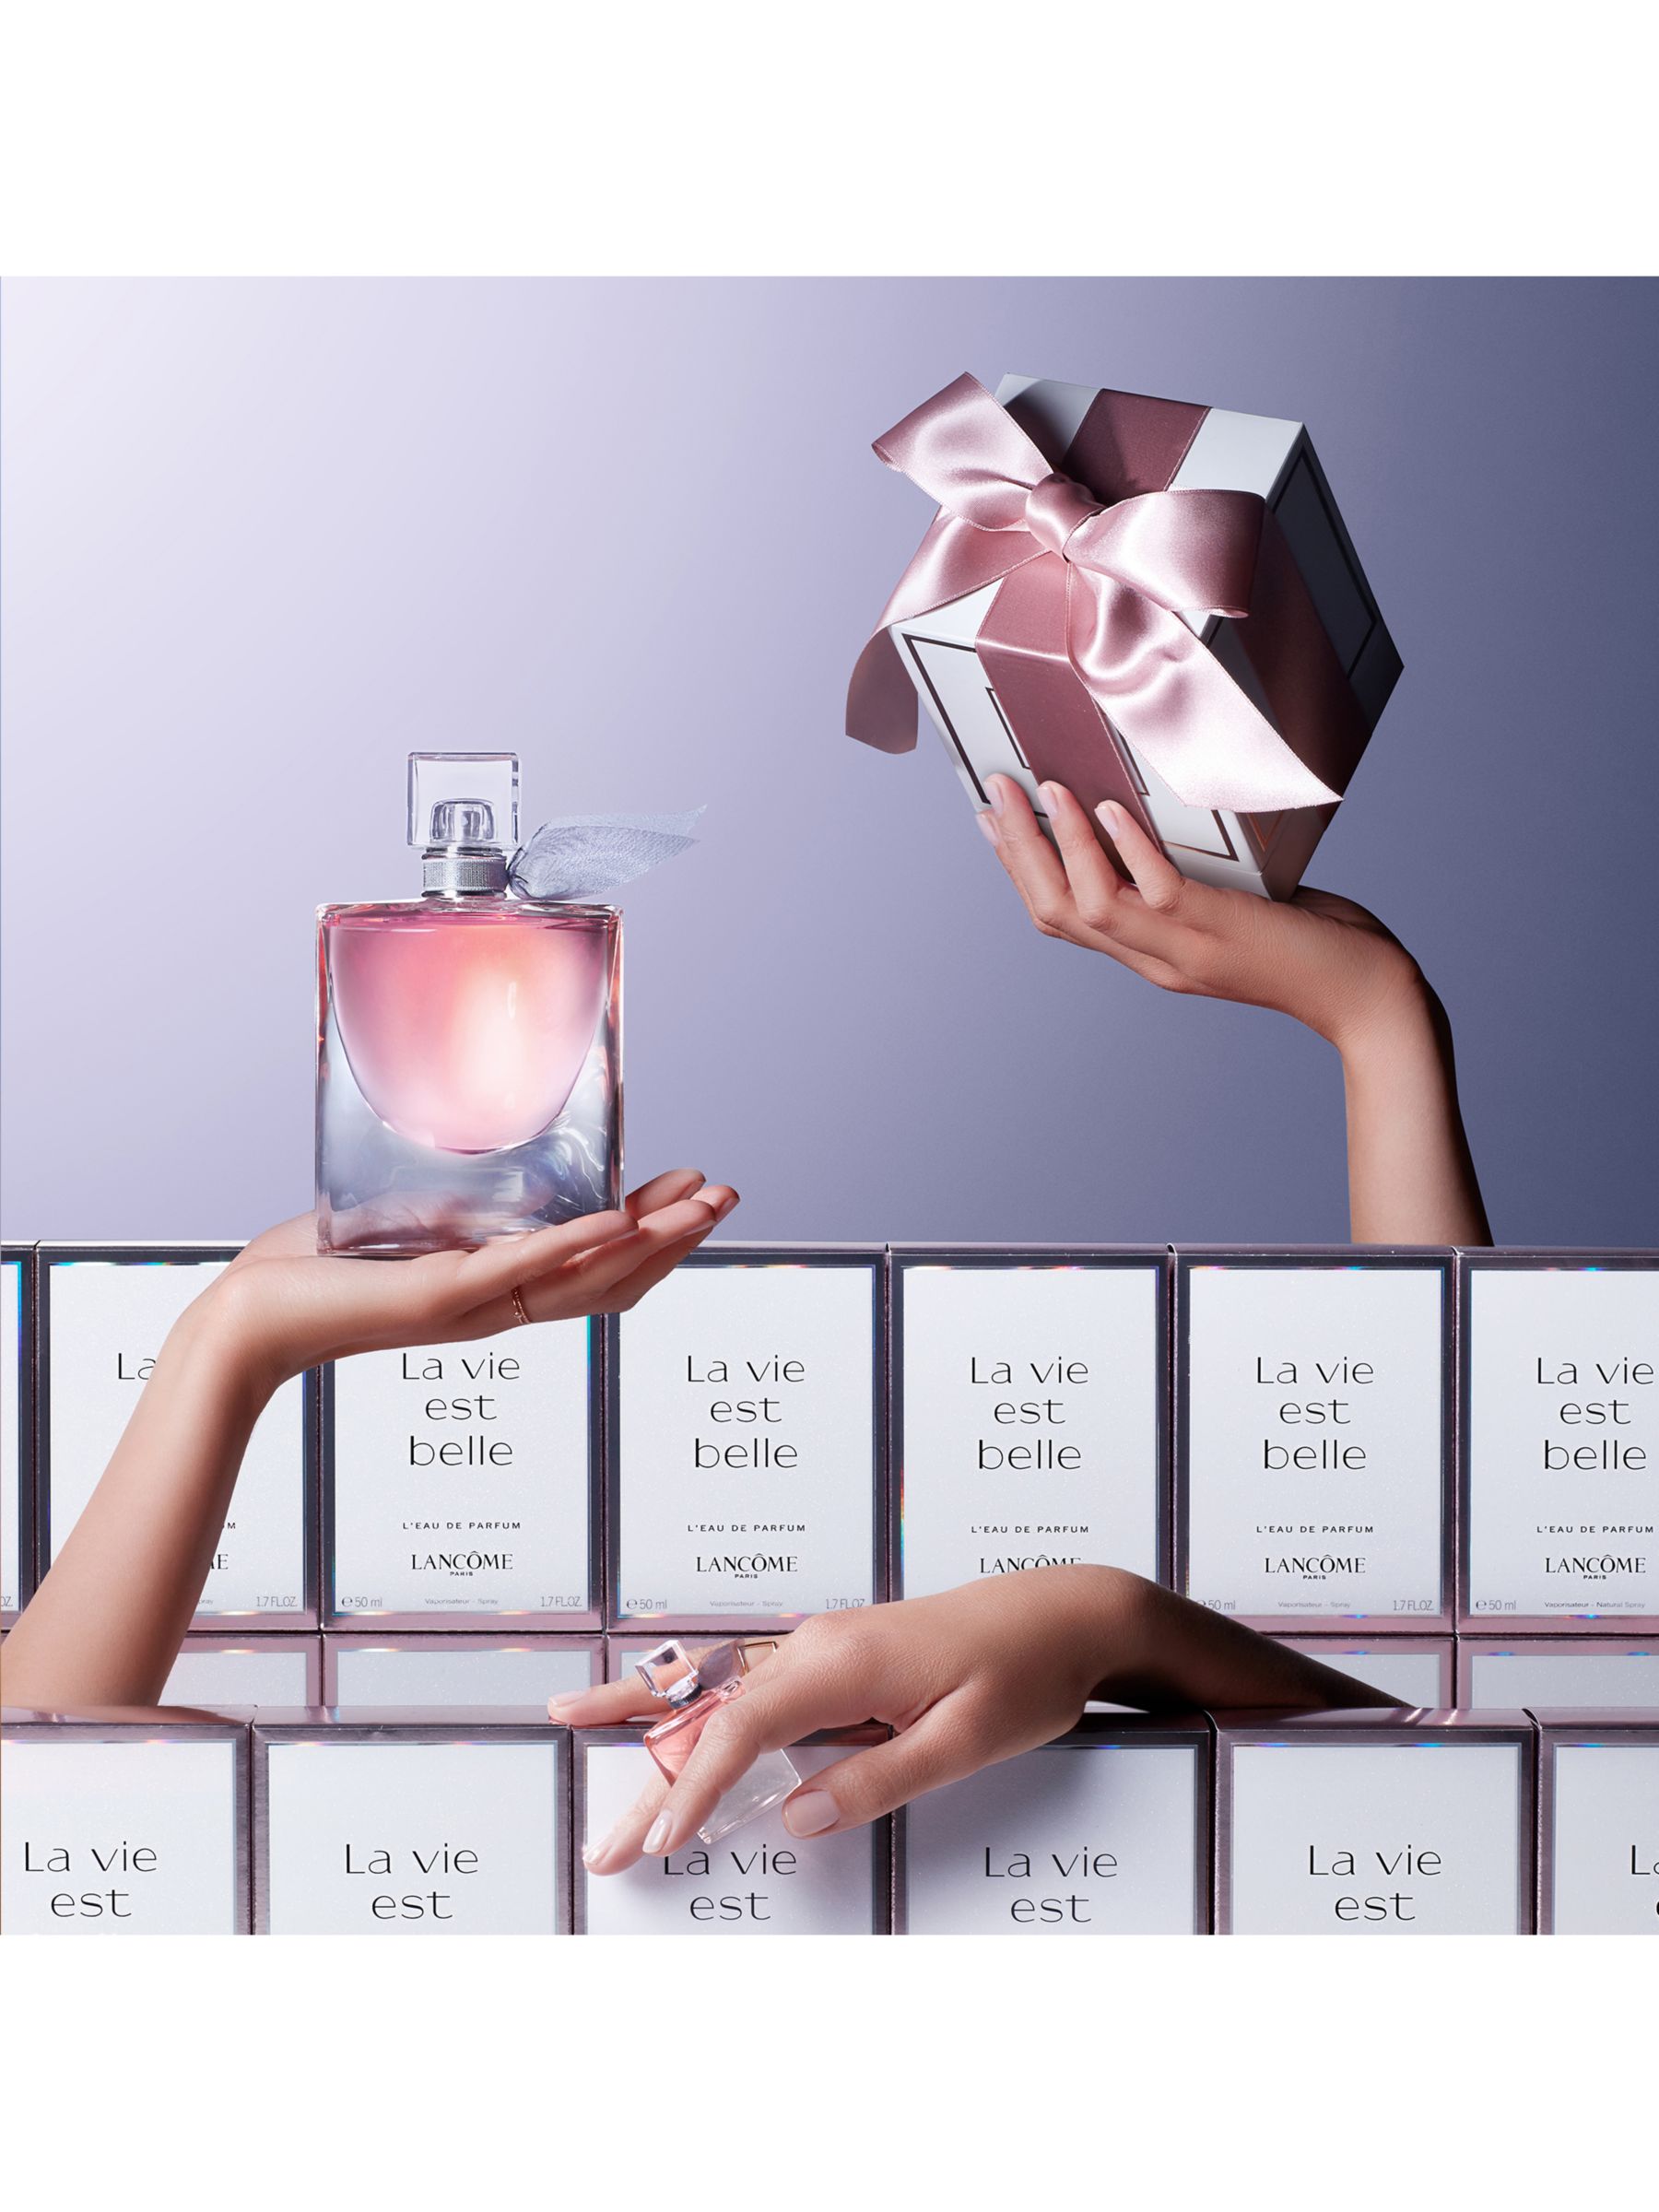 Lancôme La Vie Est Belle Eau de Parfum, 30ml